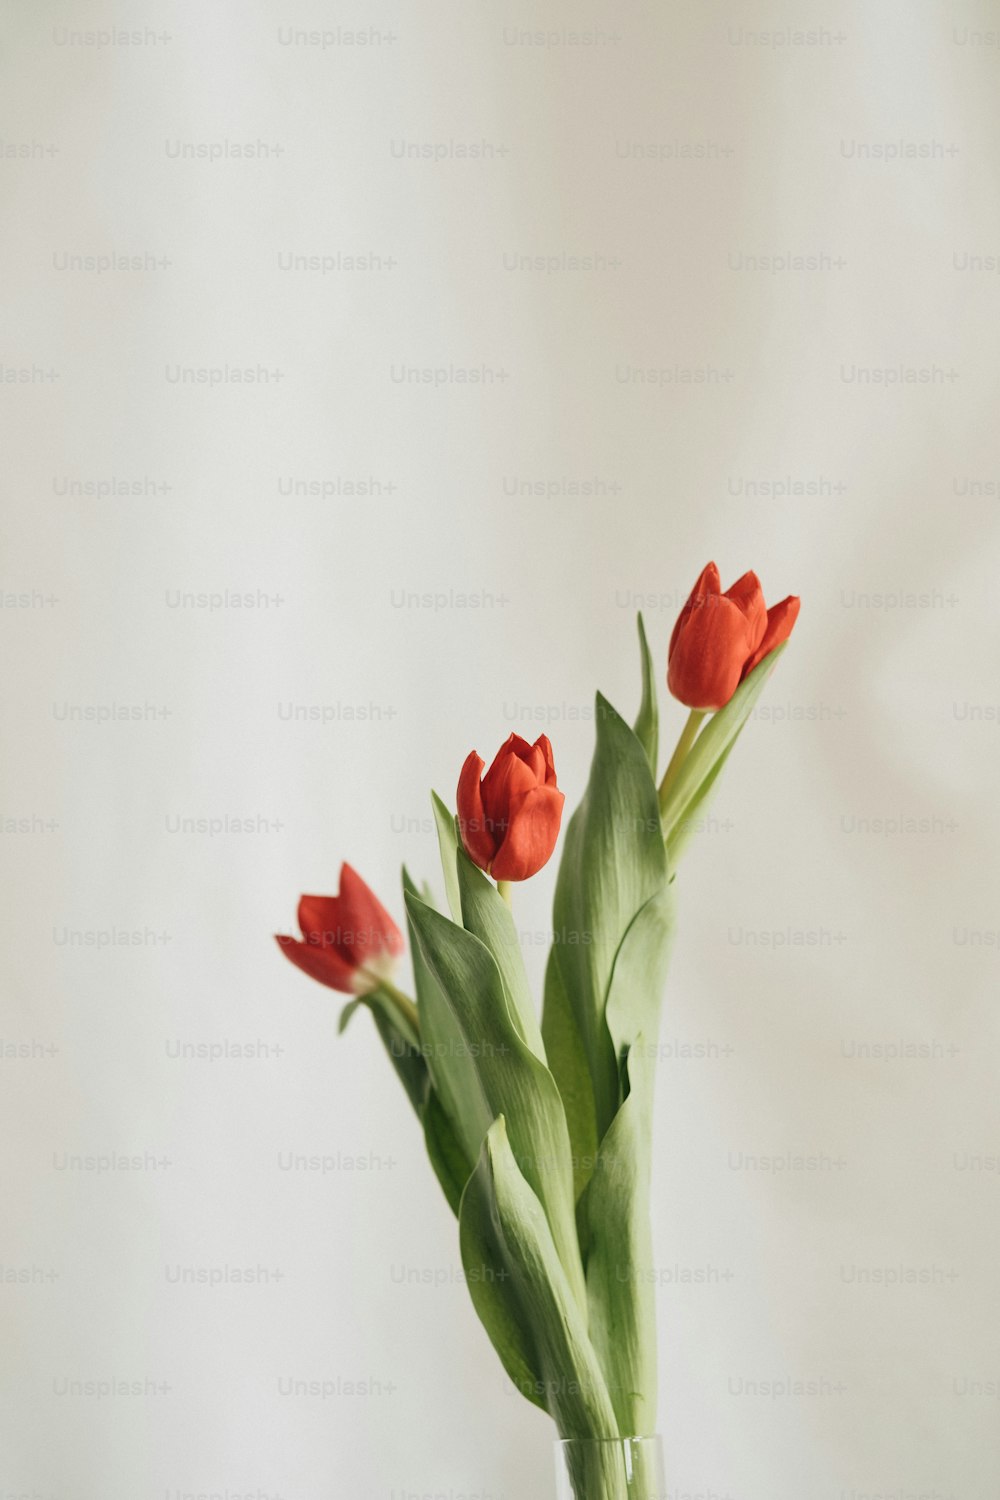 Trois tulipes rouges dans un vase sur une table